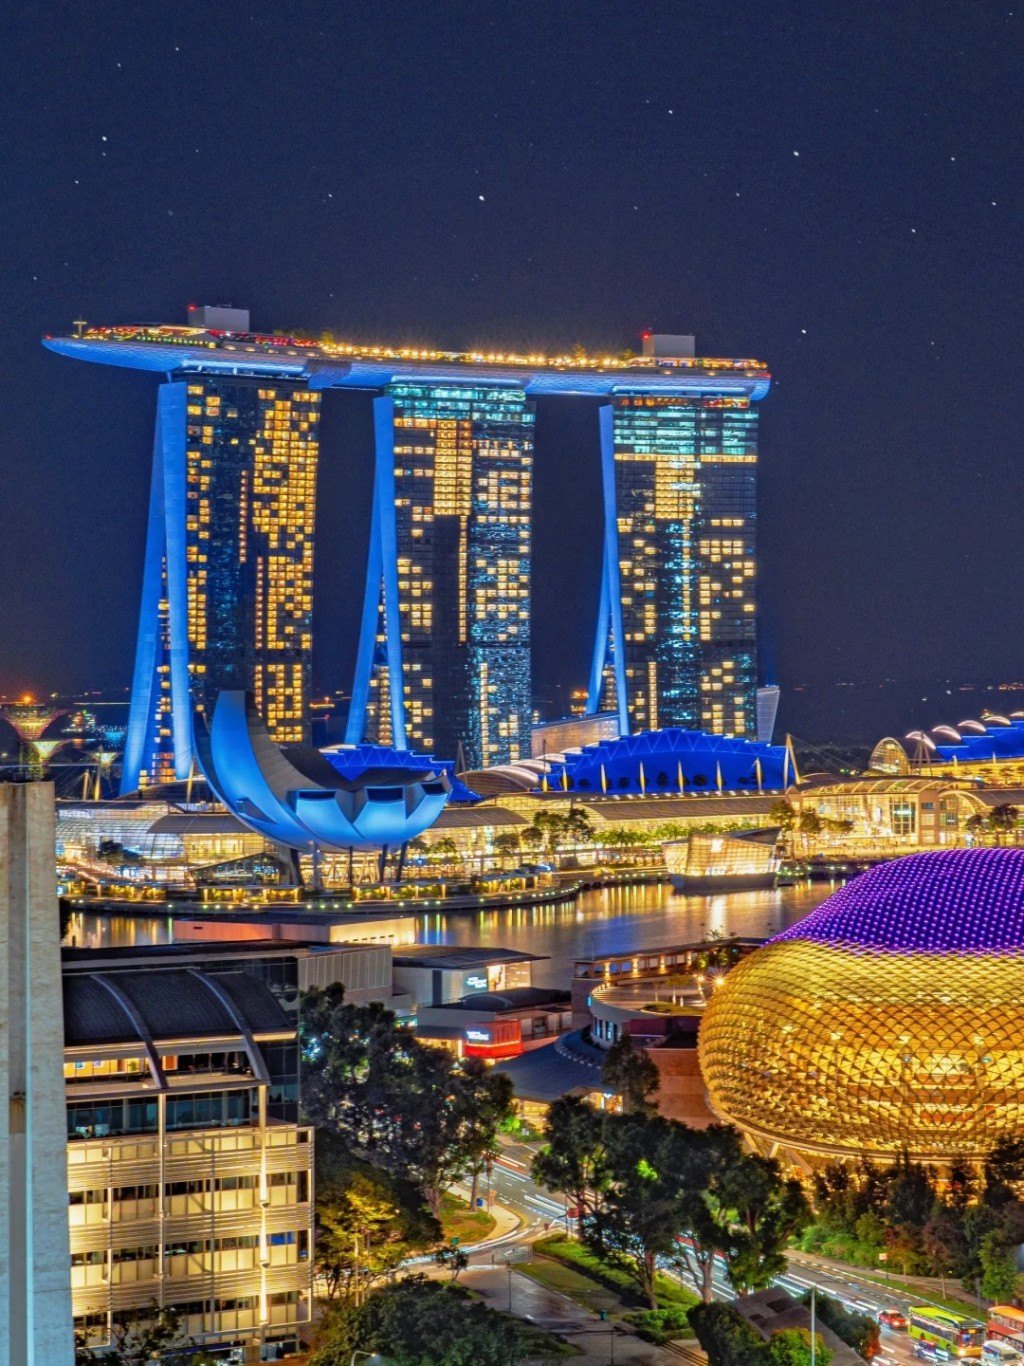 新加坡也是国内游客外游热门地。小红书